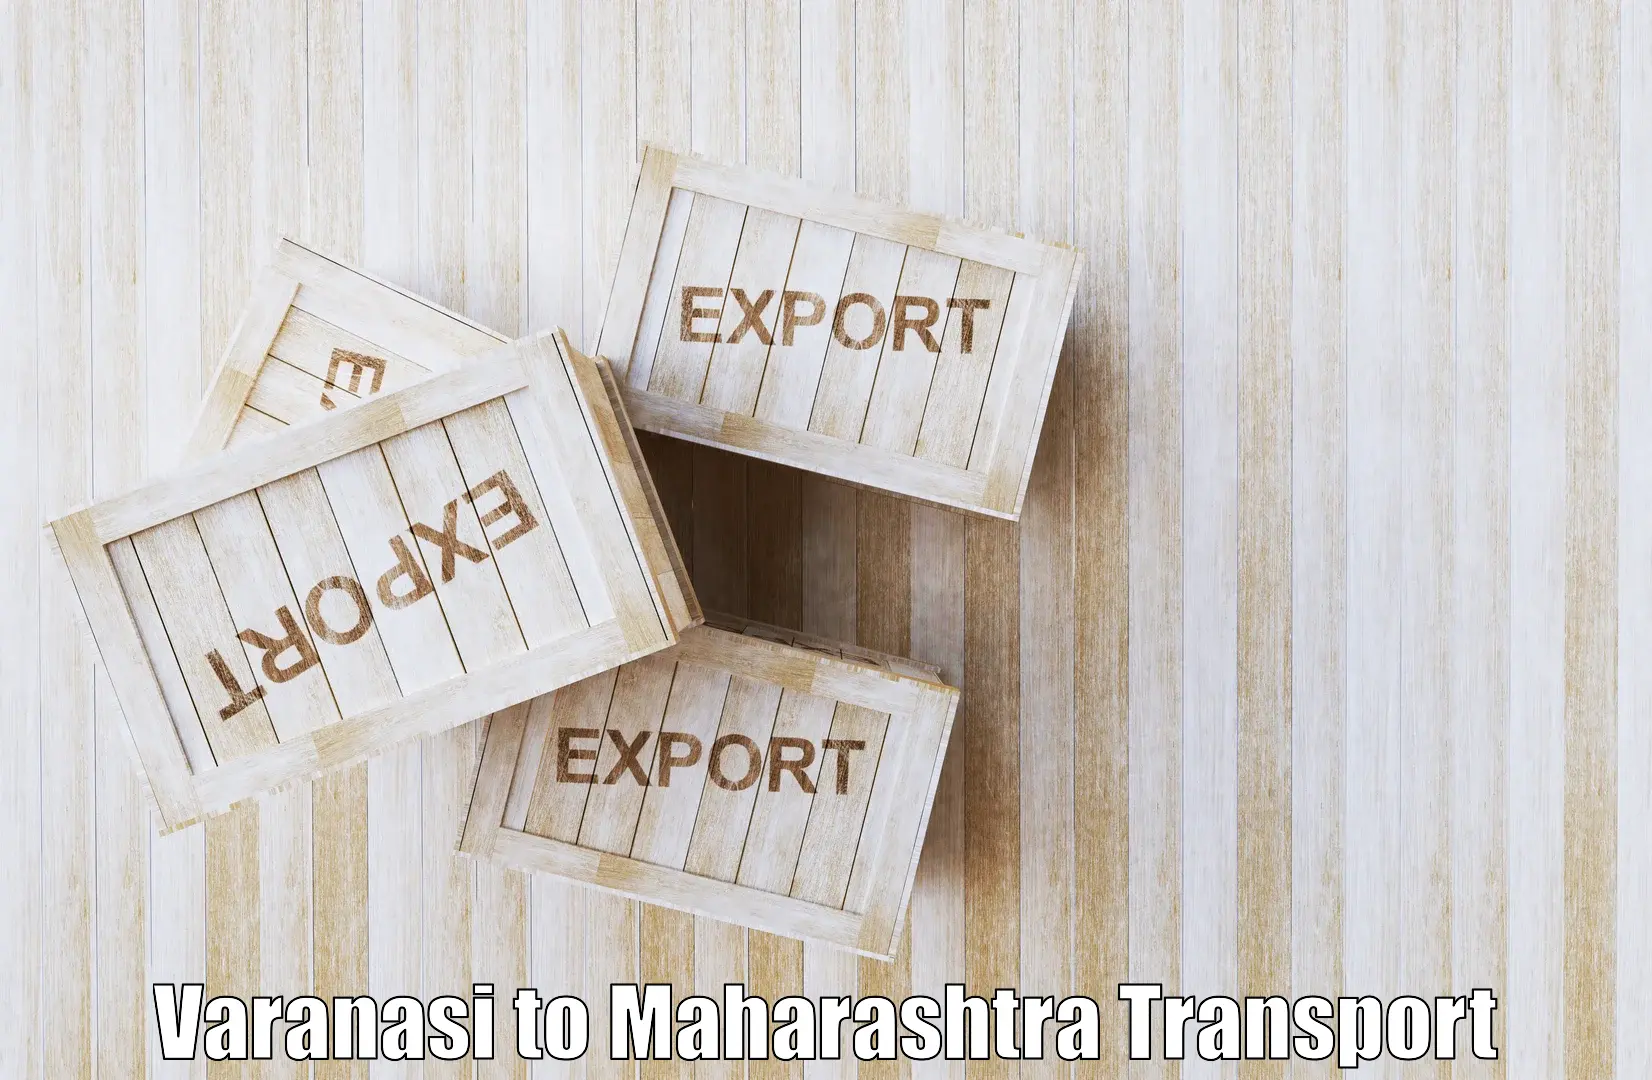 Transportation solution services Varanasi to Sindhudurg